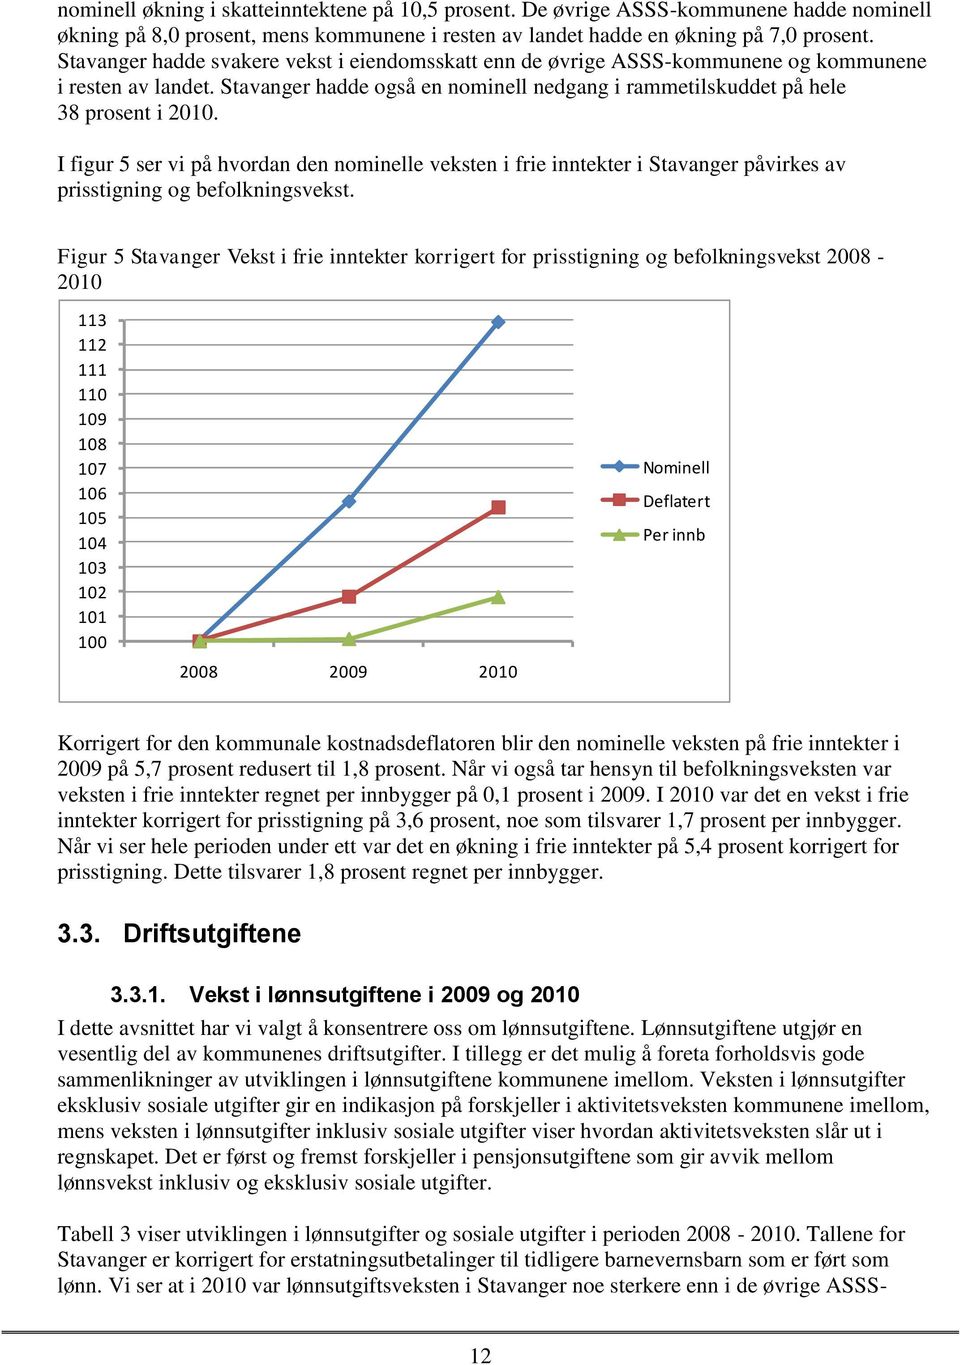 I figur 5 ser vi på hvordan den nominelle veksten i frie inntekter i Stavanger påvirkes av prisstigning og befolkningsvekst.